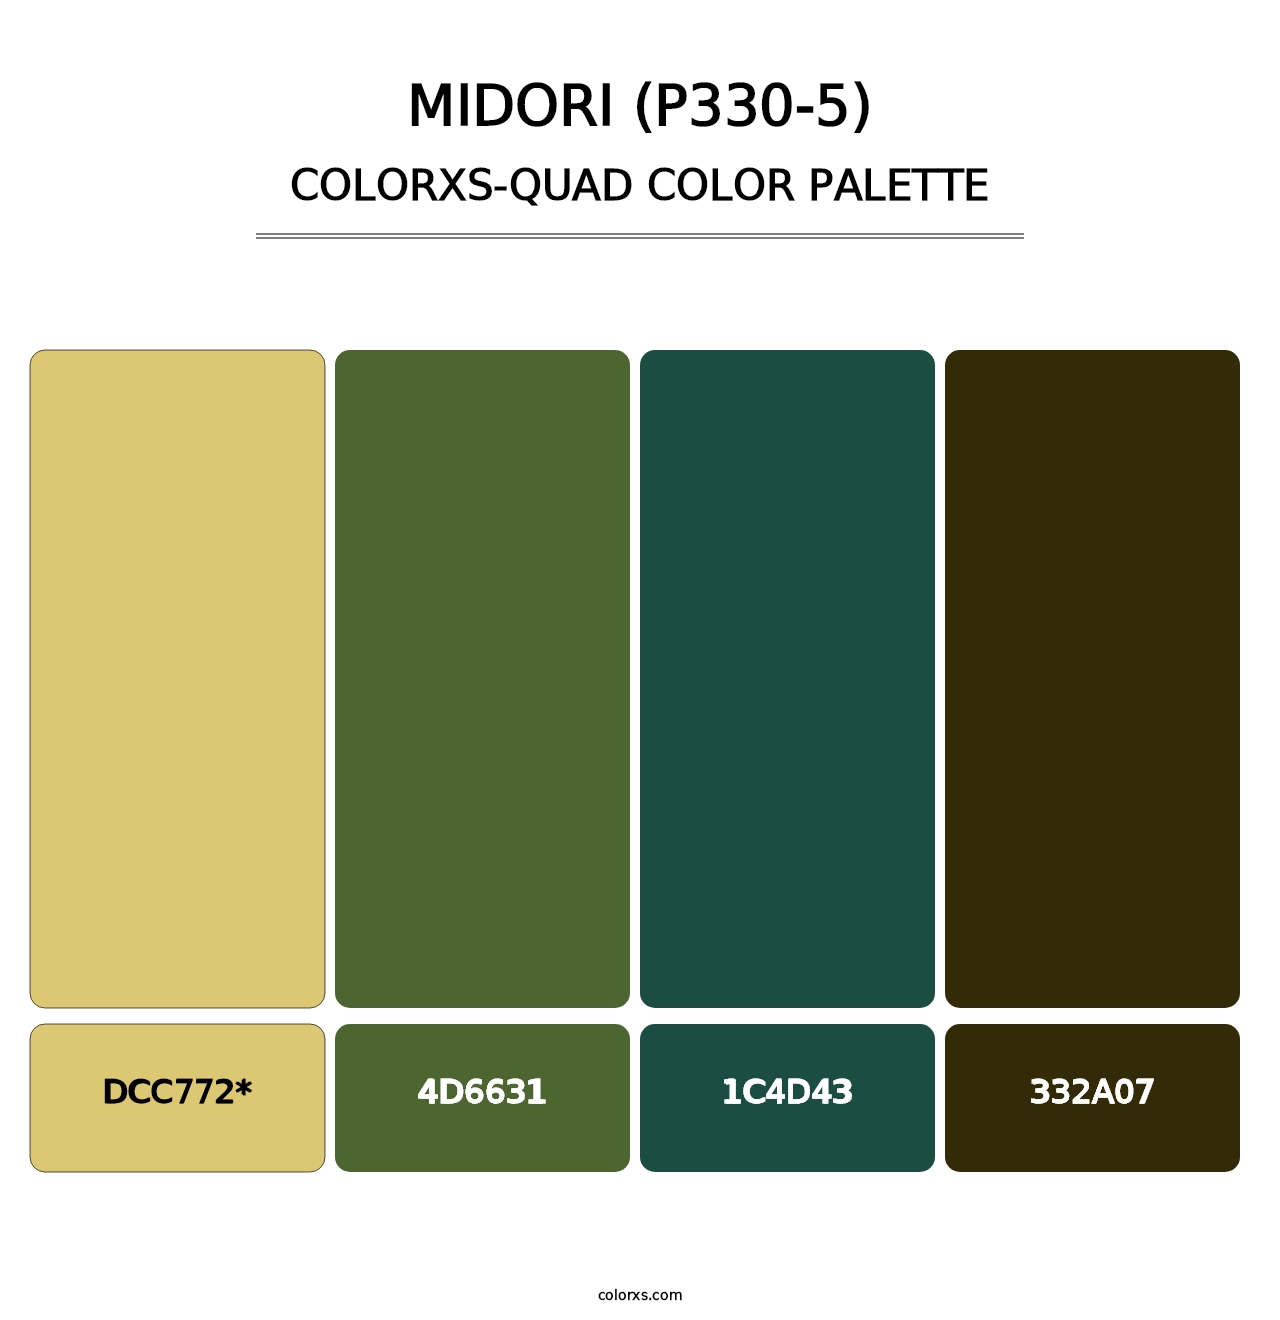 Midori (P330-5) - Colorxs Quad Palette